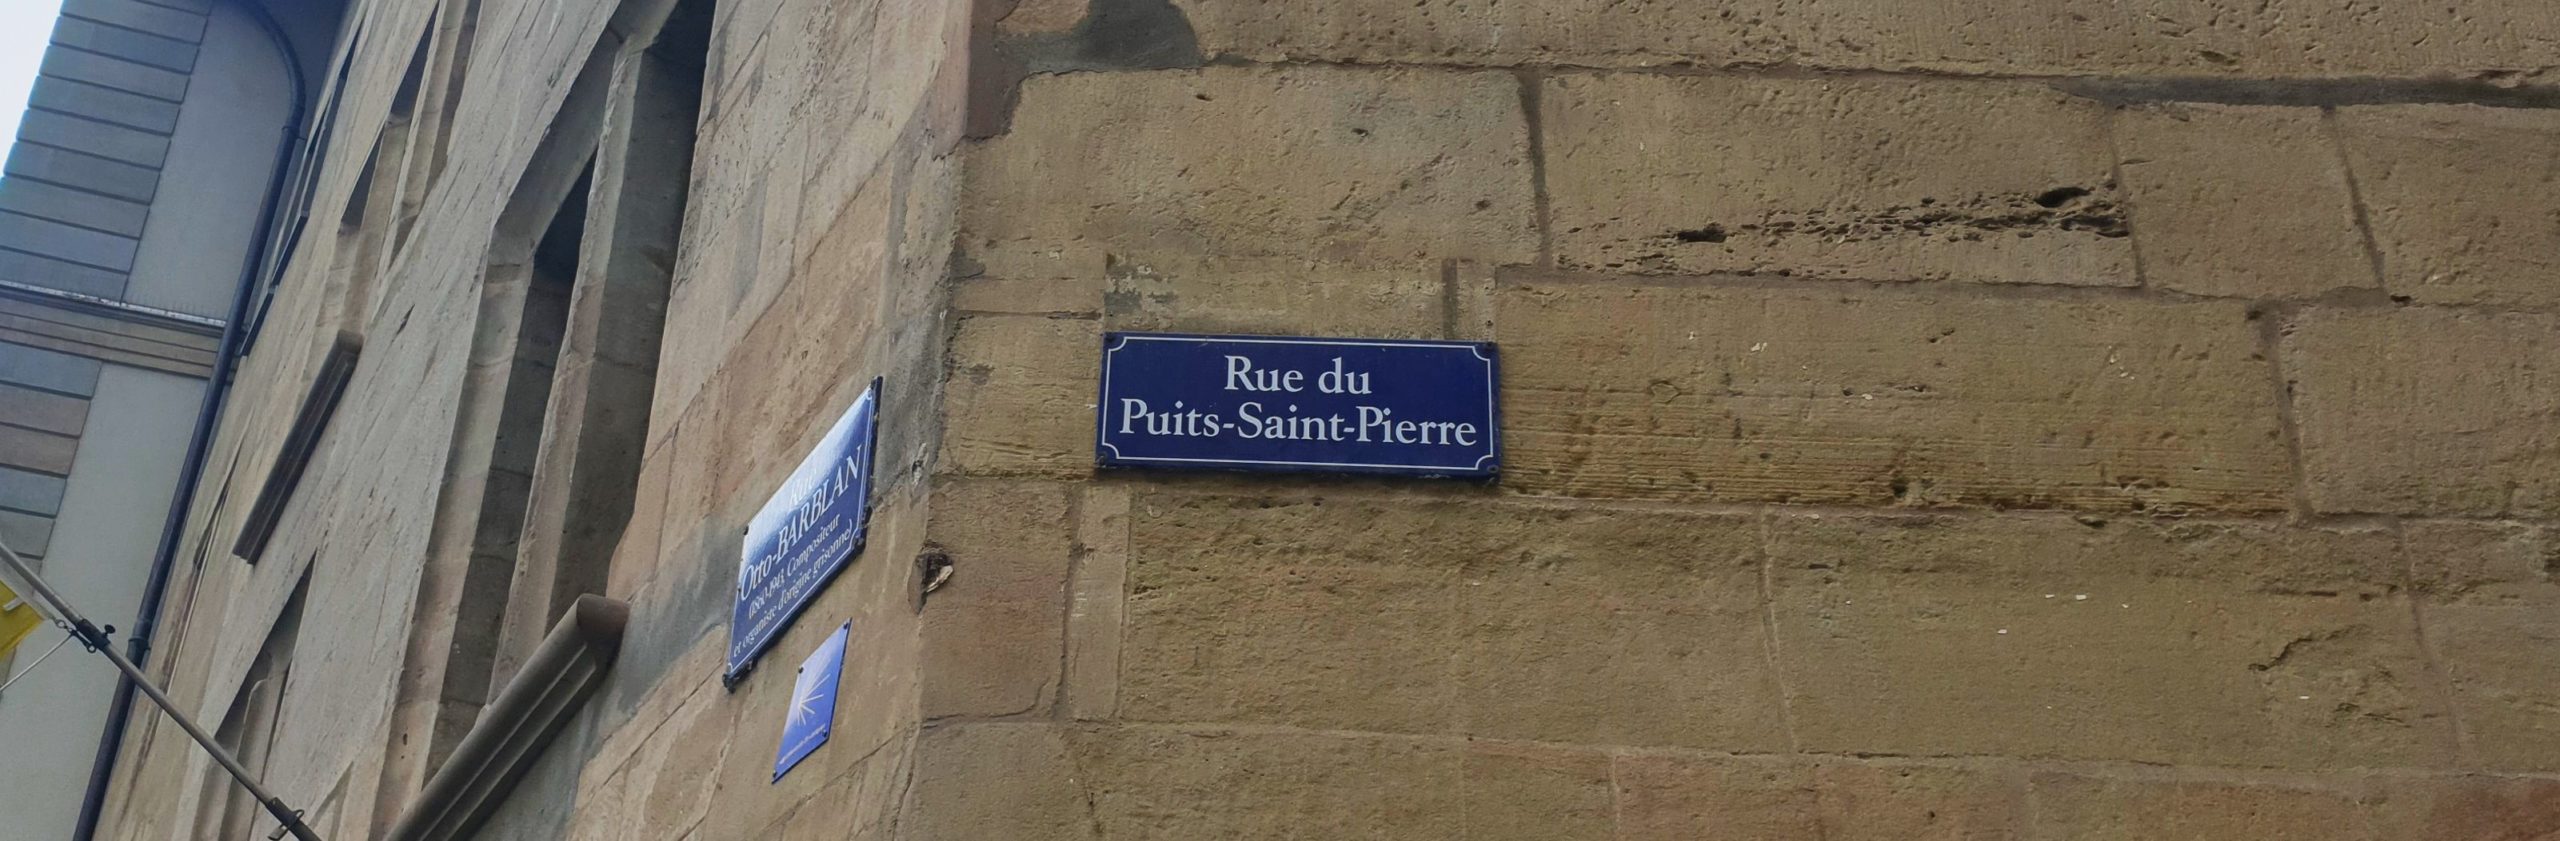 Rue du Puits-Saint-Pierre